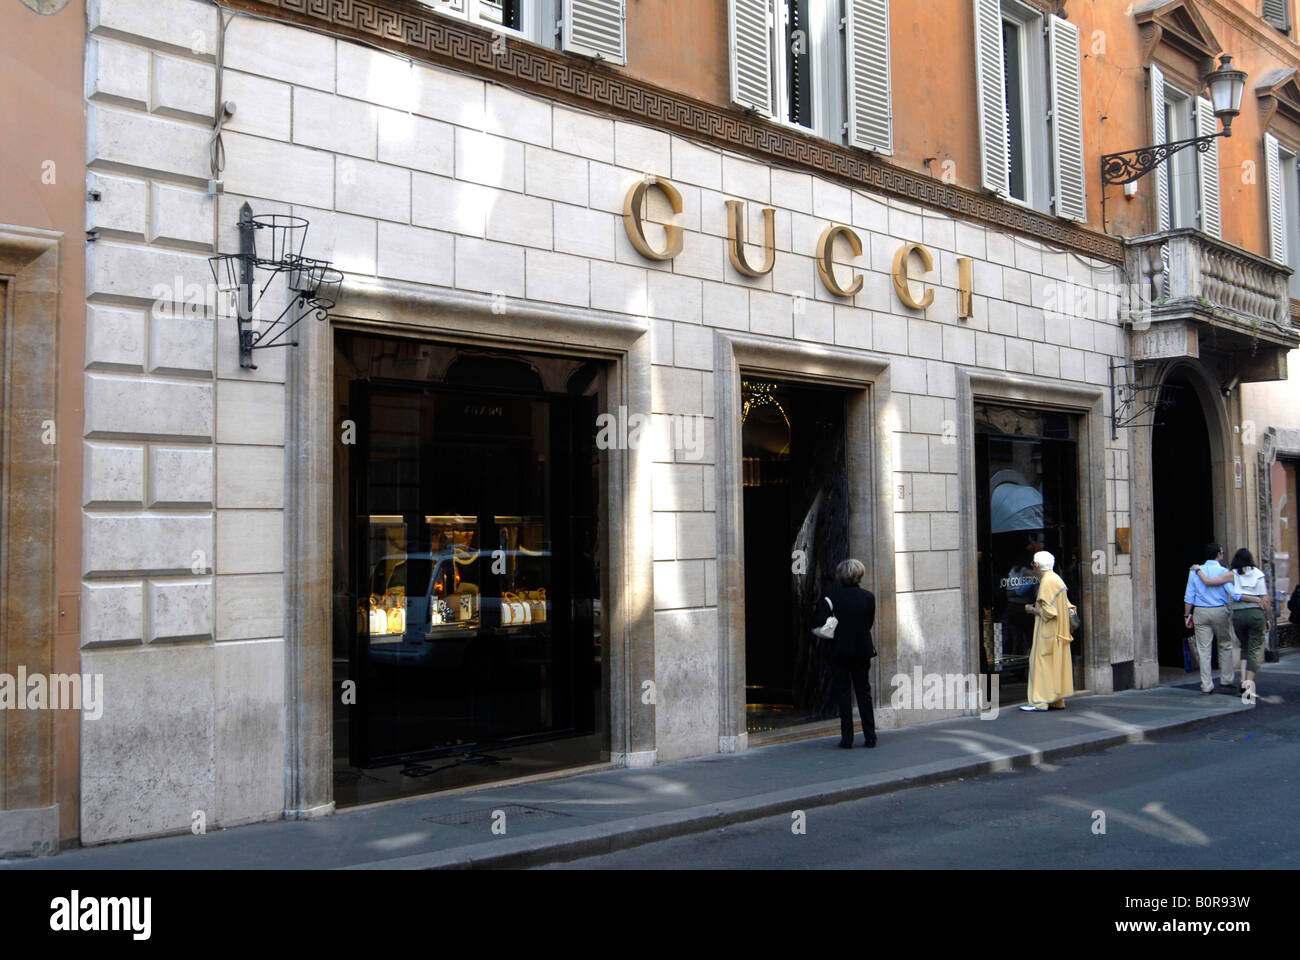 windows of Guicci shop via Condotti Roma Italy Stock Photo